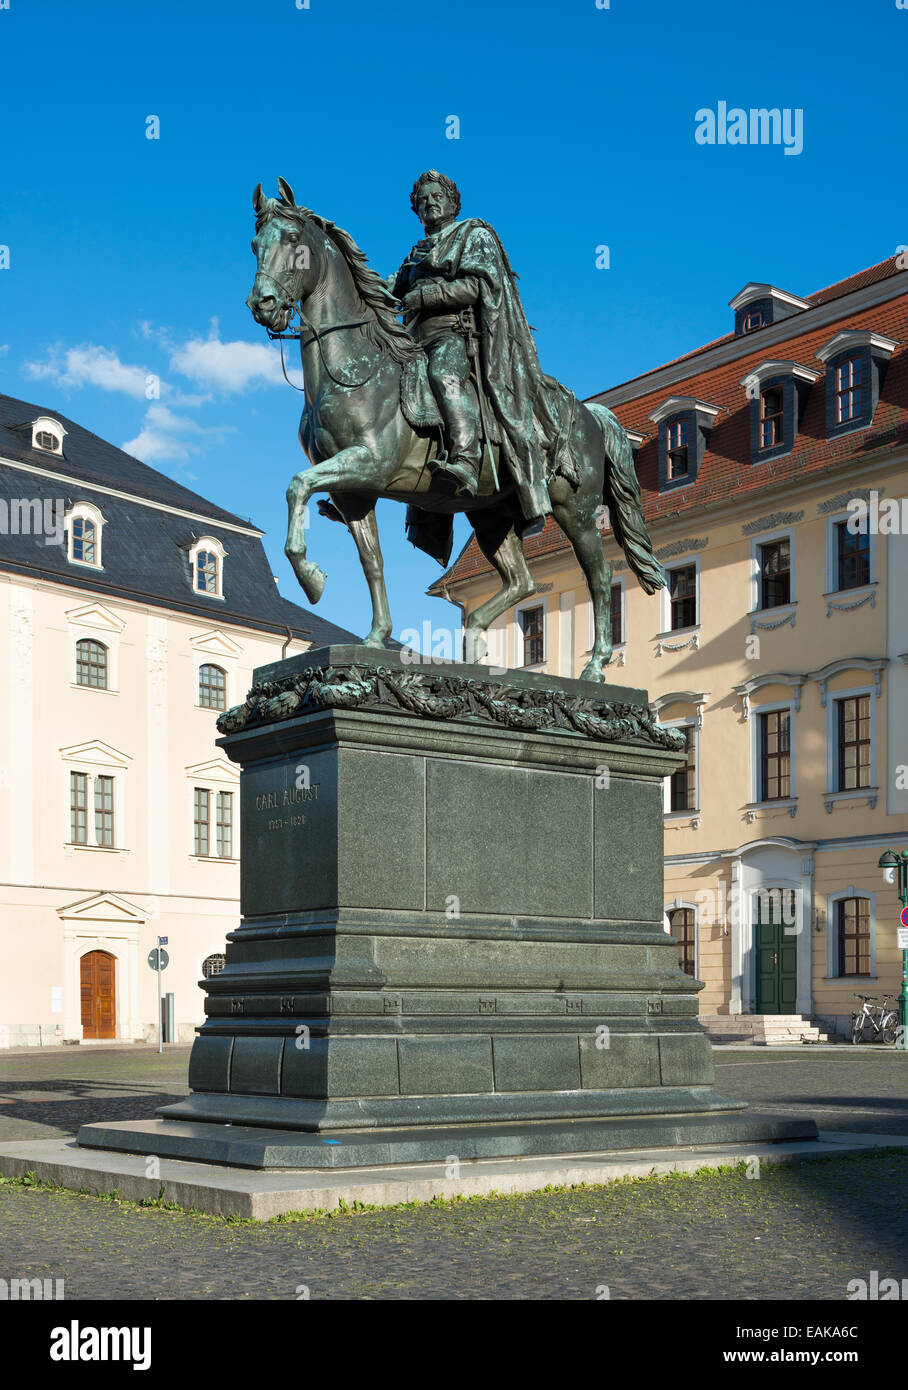 Carl Agosto monumento, statua equestre, in bronzo, Weimar, Turingia, Germania Foto Stock